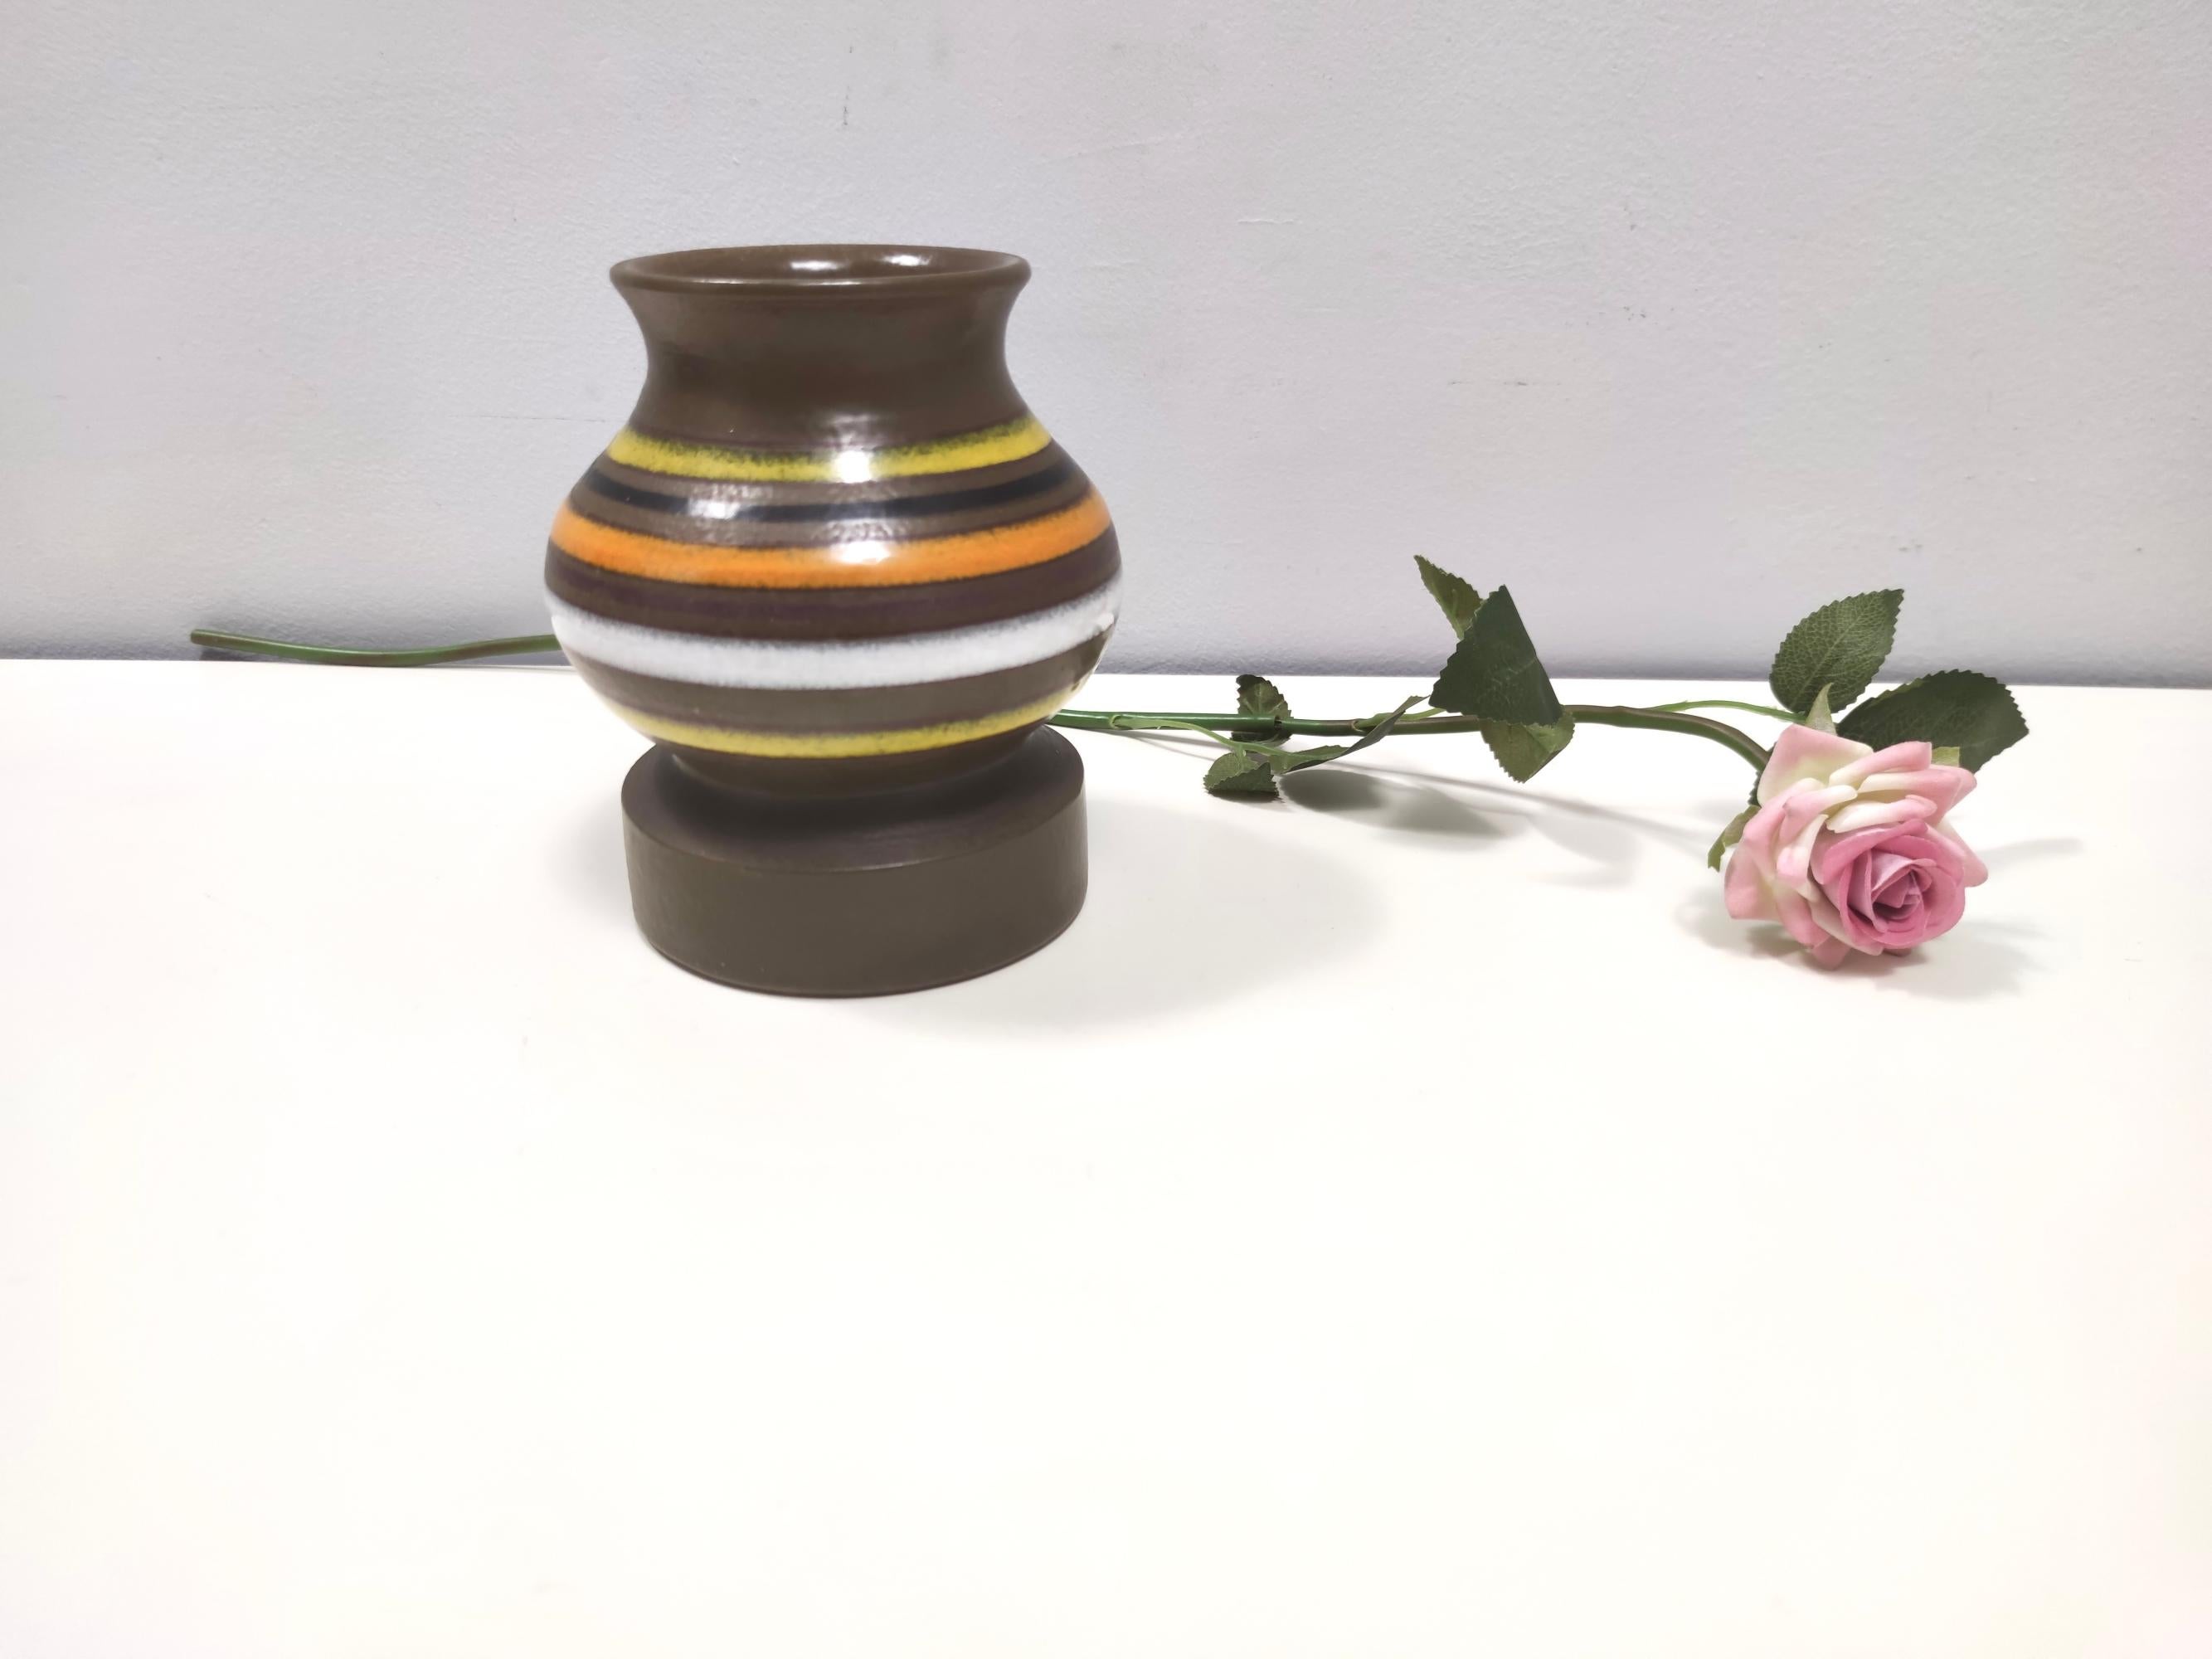 Fabriqué en Italie, années 1970. 
Il s'agit d'un vase en faïence émaillée brune avec un motif linéaire de différentes couleurs.
Il s'agit d'un article vintage, qui peut donc présenter de légères traces d'utilisation, mais qui peut être considéré